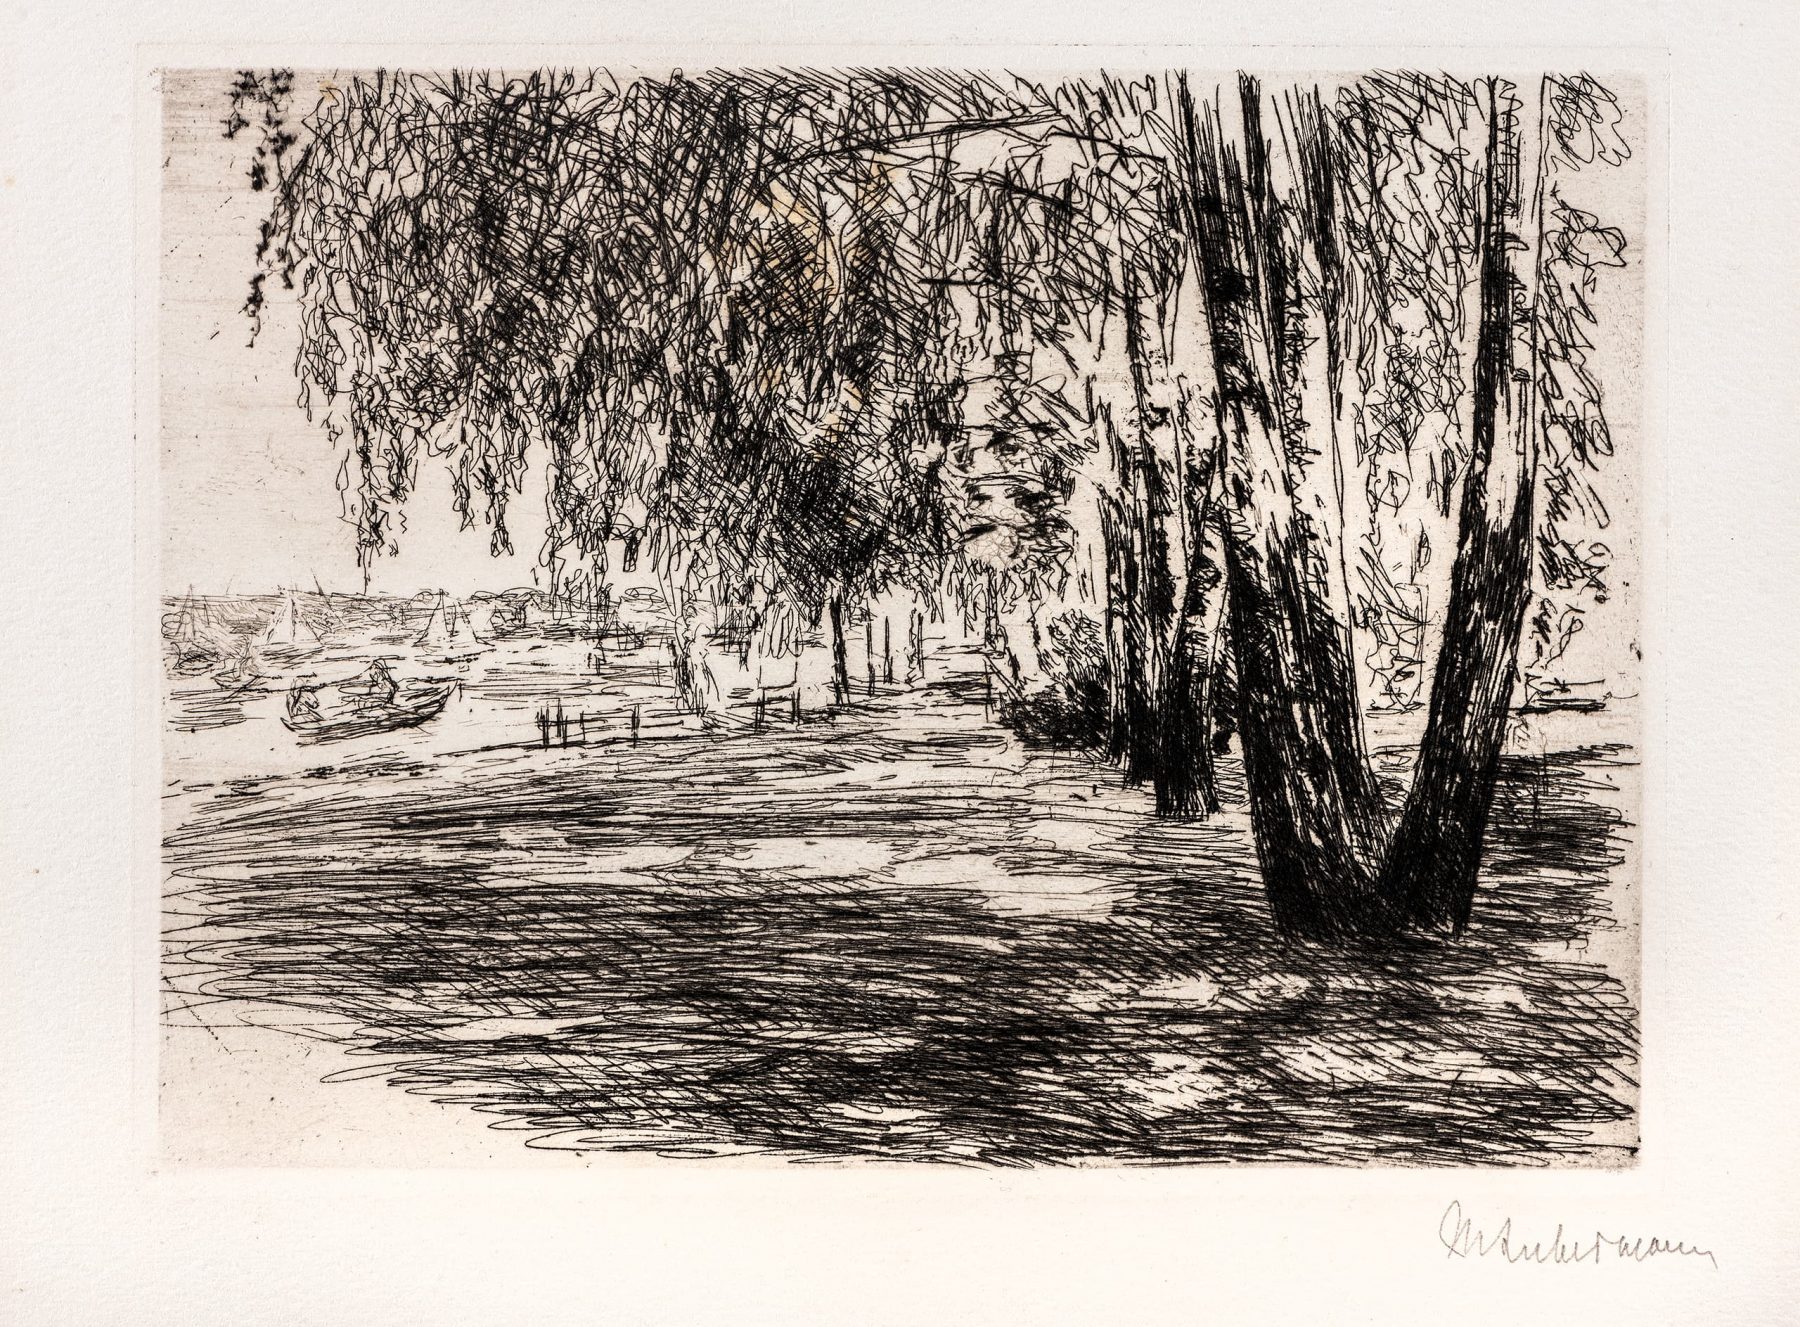 Druckgrafisches Werk von Max Liebermann. Motiv zeigt in vielen schwarzen Linien angedeutet eine Wiese, links mit einem See und Segelbooten, rechts viele Bäume, die den Himmel bedecken.